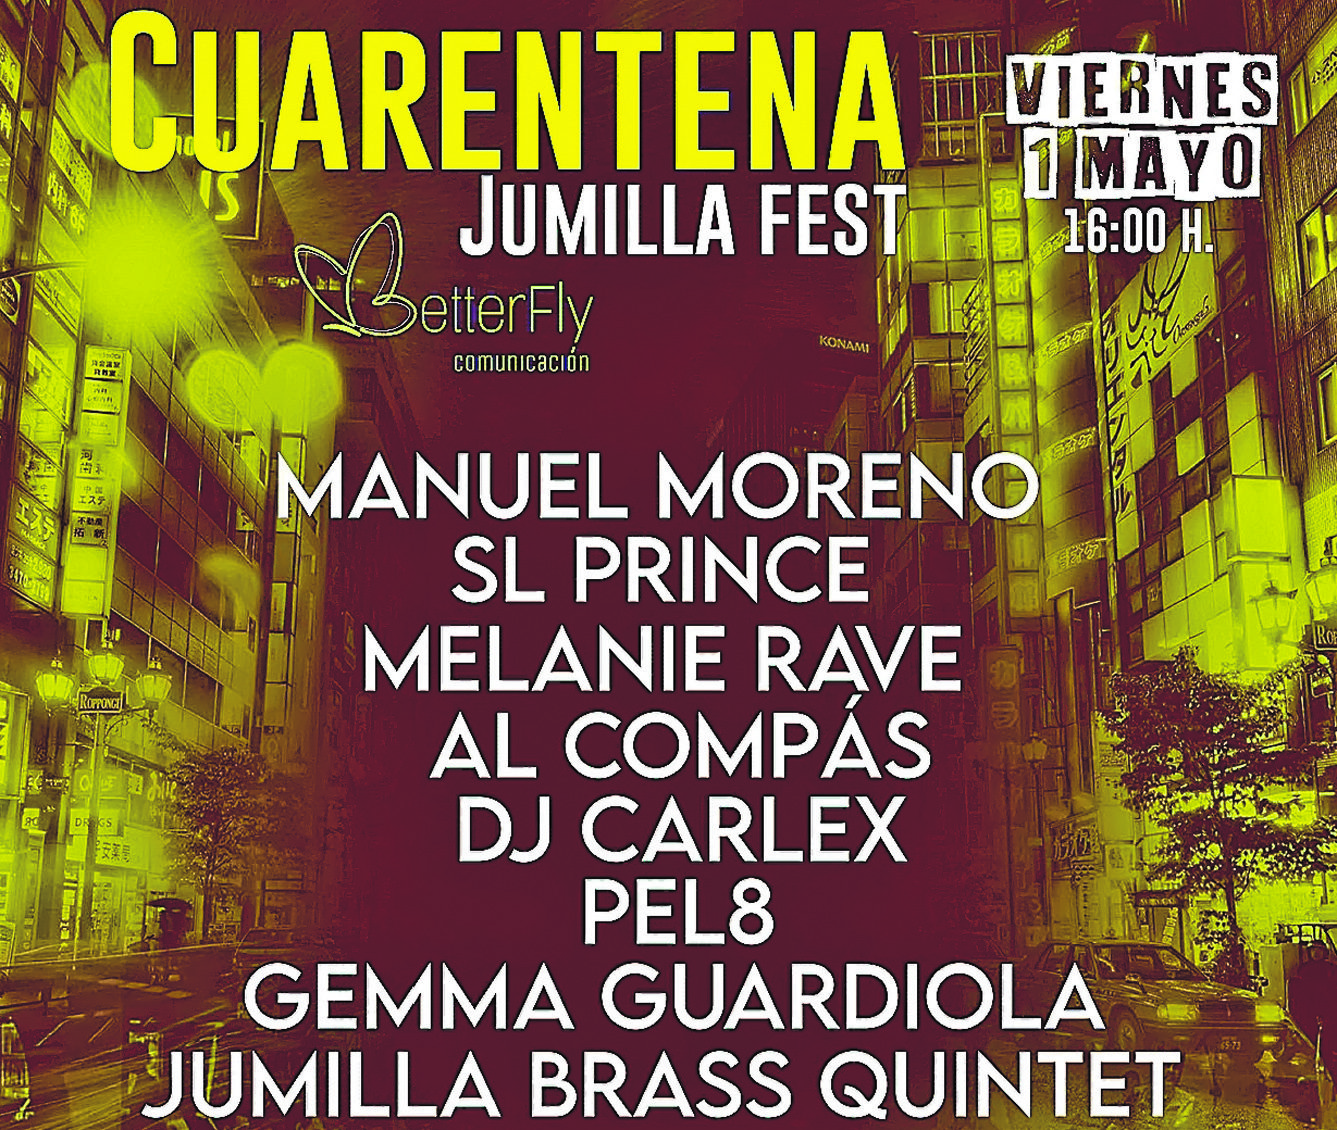 El ‘Cuarentena Jumilla Fest’ amenizará el confinamiento con grandes artistas locales